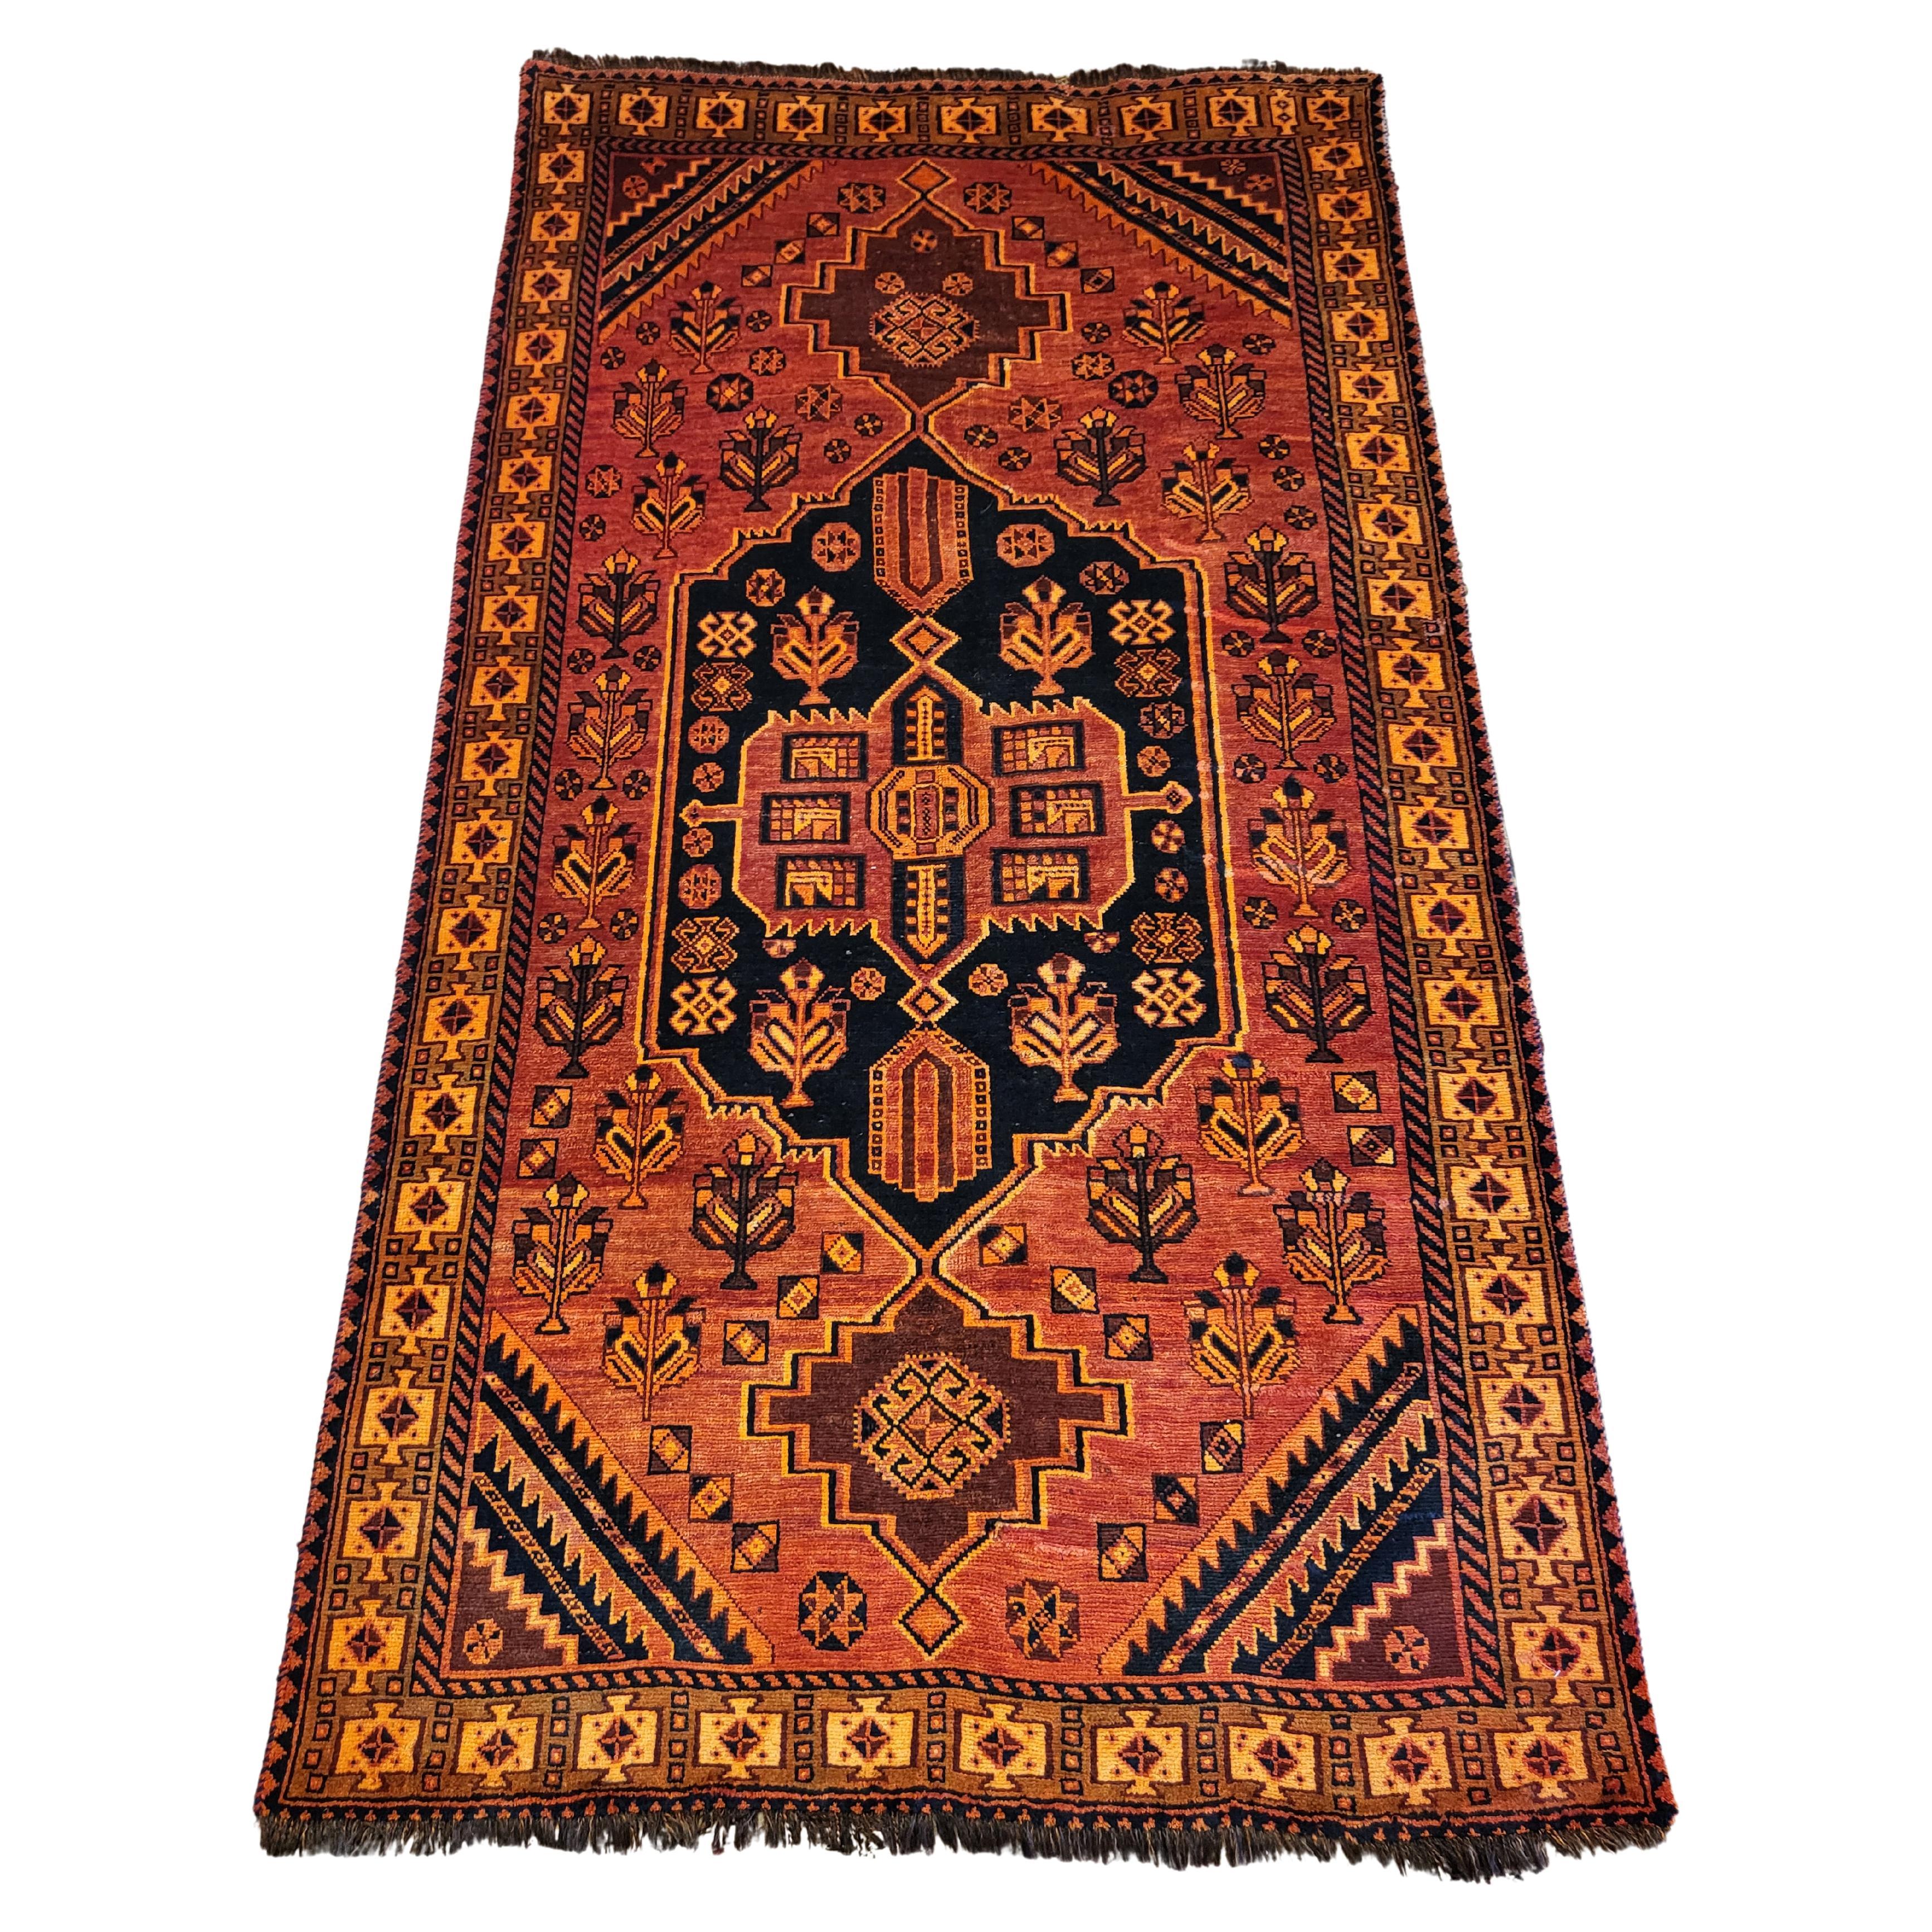 Lori, vieux de plus de 100 ans, tapis persan géométrique nomade - orange / rouille, marine / noir